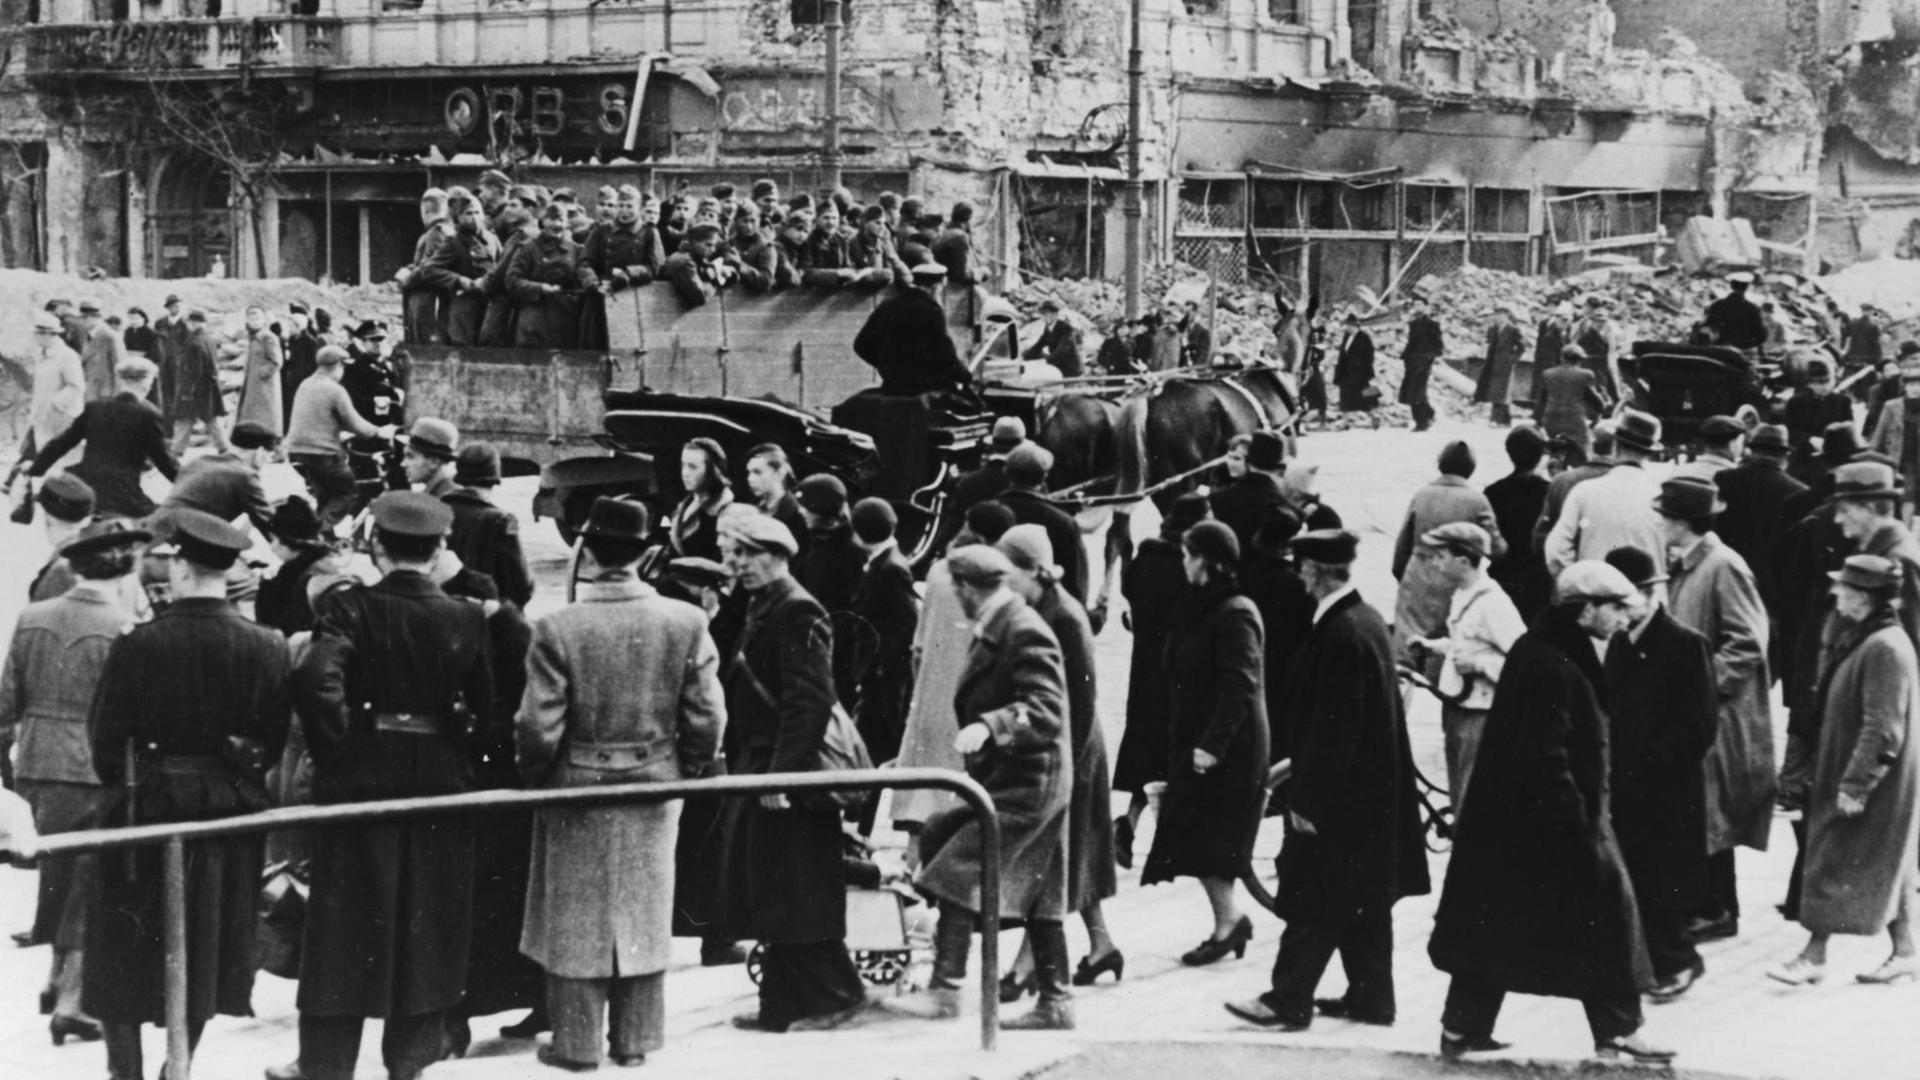 Warschau unter deutscher Besatzung. Eine Strassenszene aus dem Zweiten Weltkrieg von 1939.